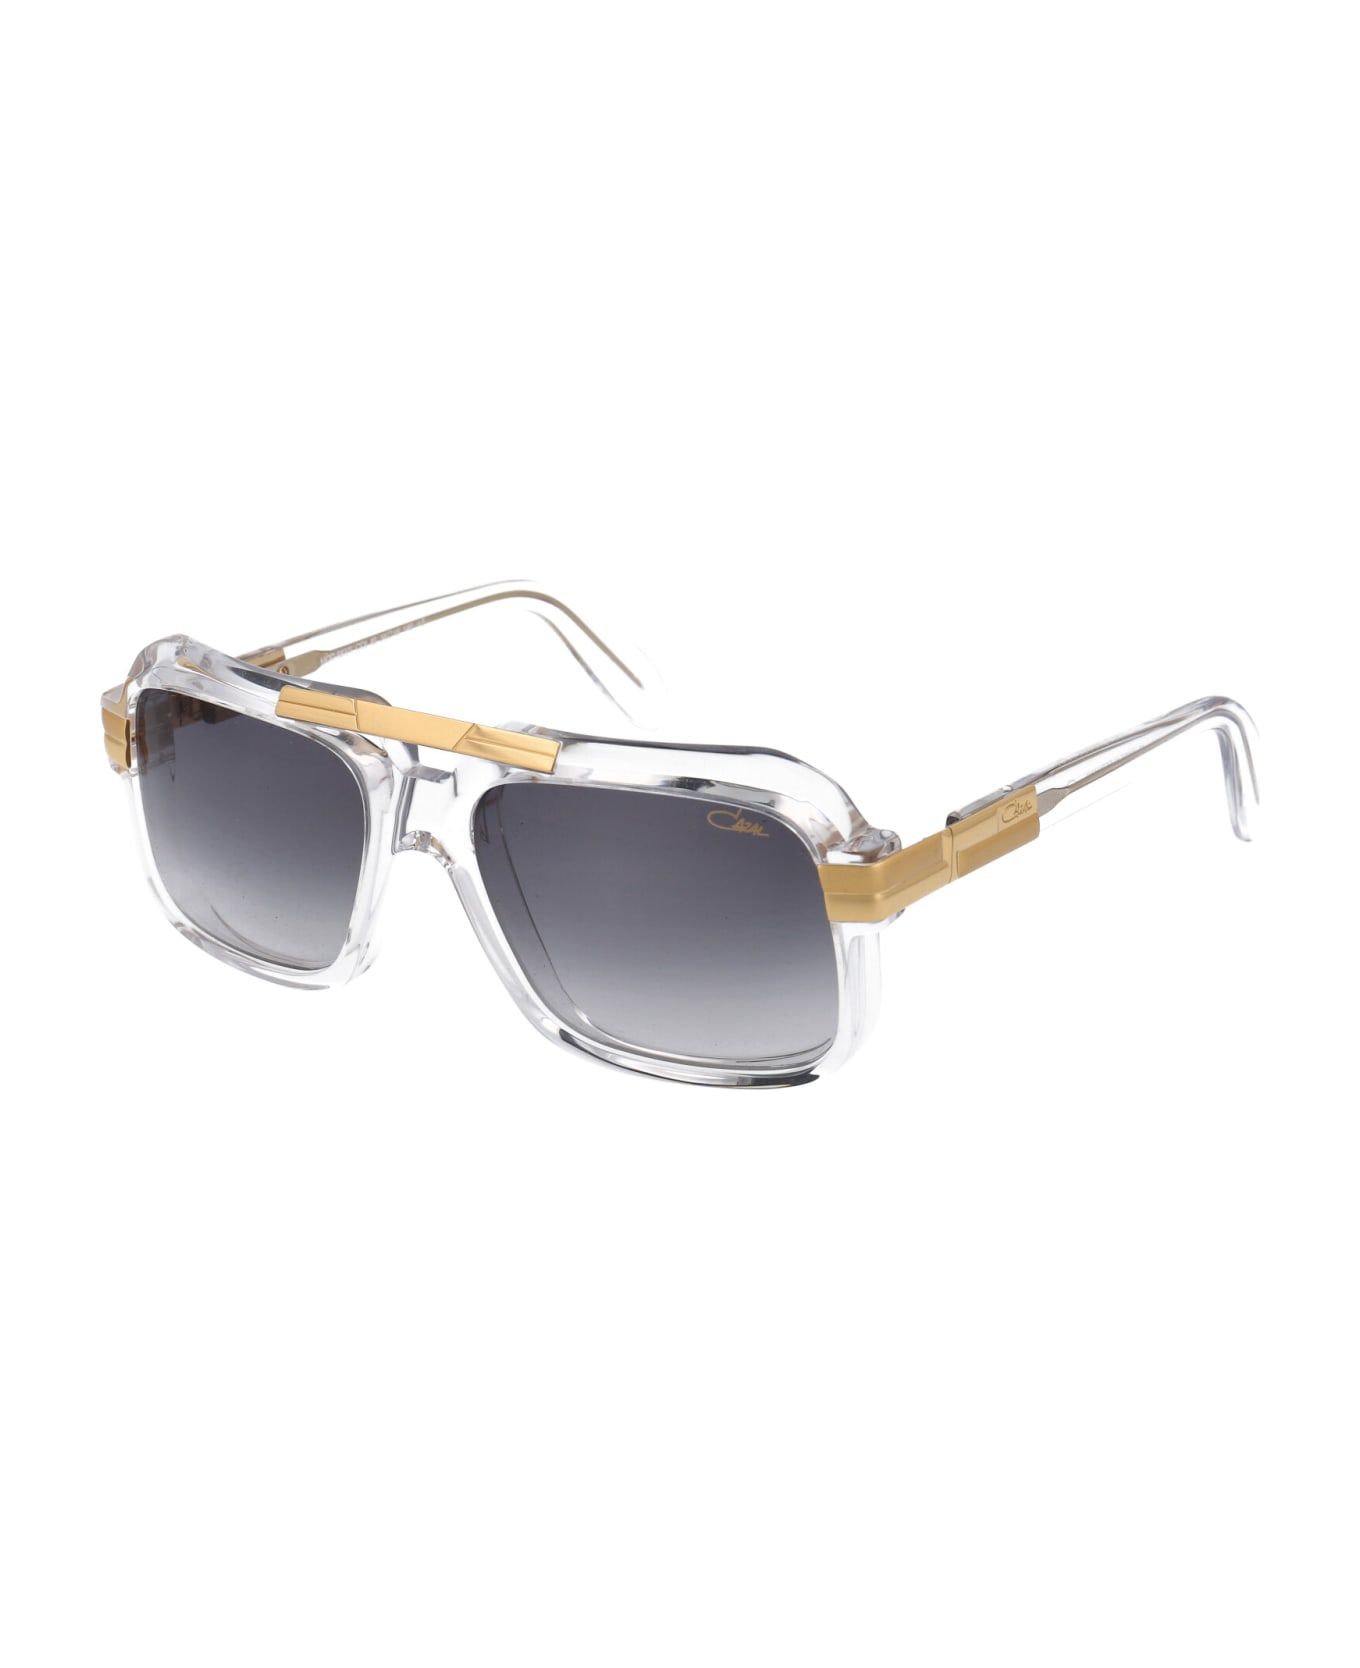 Cazal Mod. 663/3 Sunglasses - 065 CRYSTAL